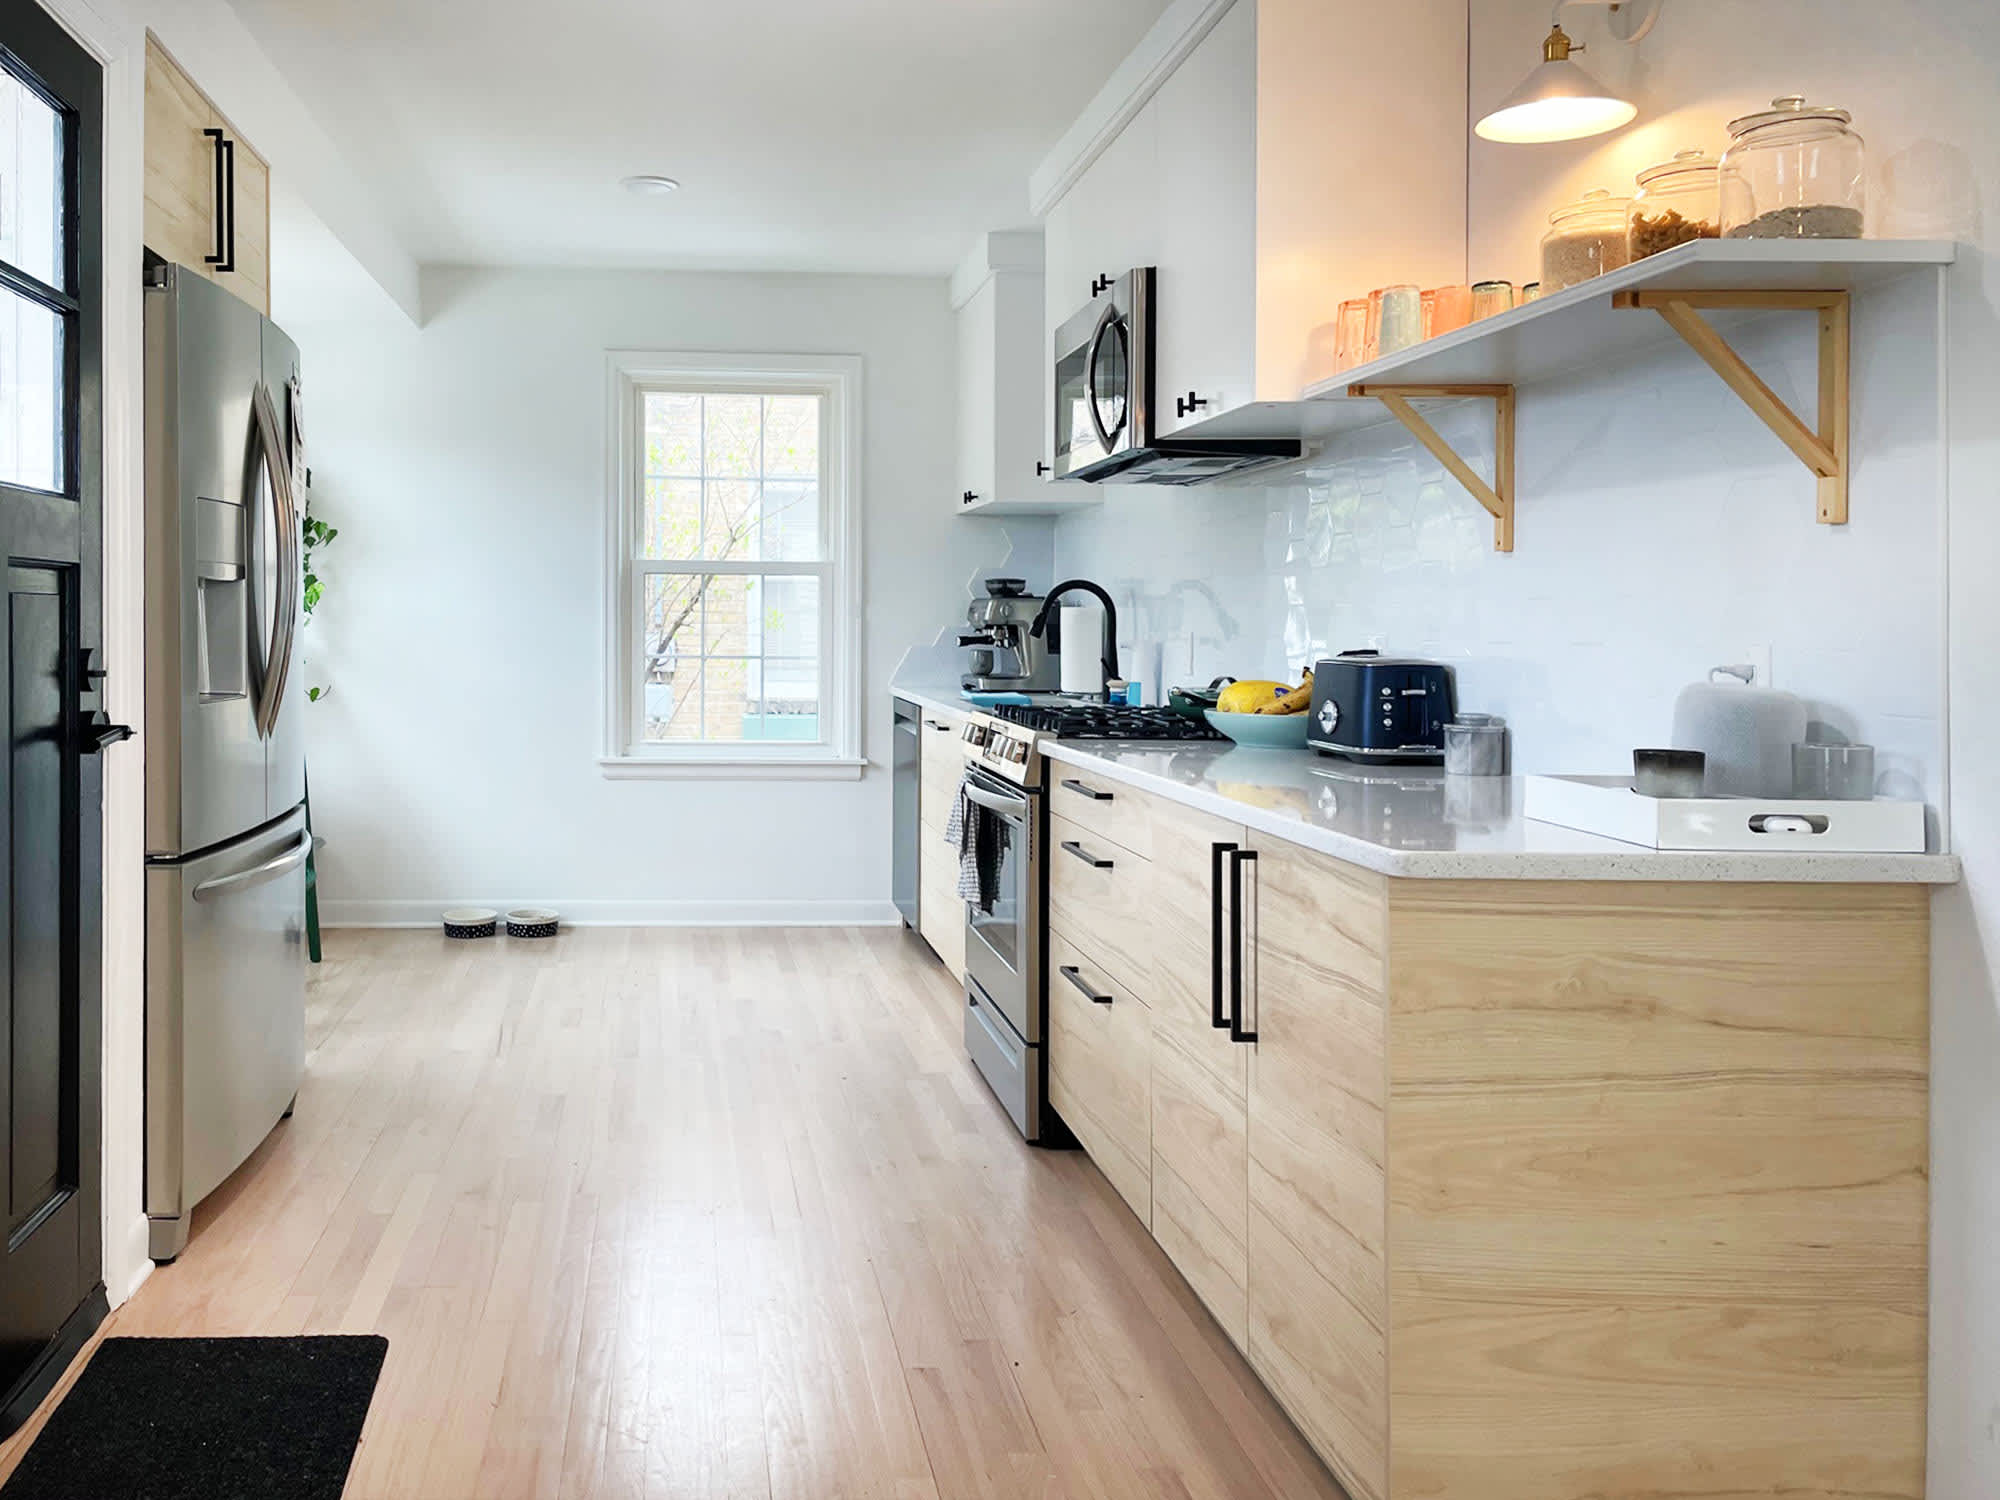 Small kitchen storage ideas: 28 smart ways to optimize space